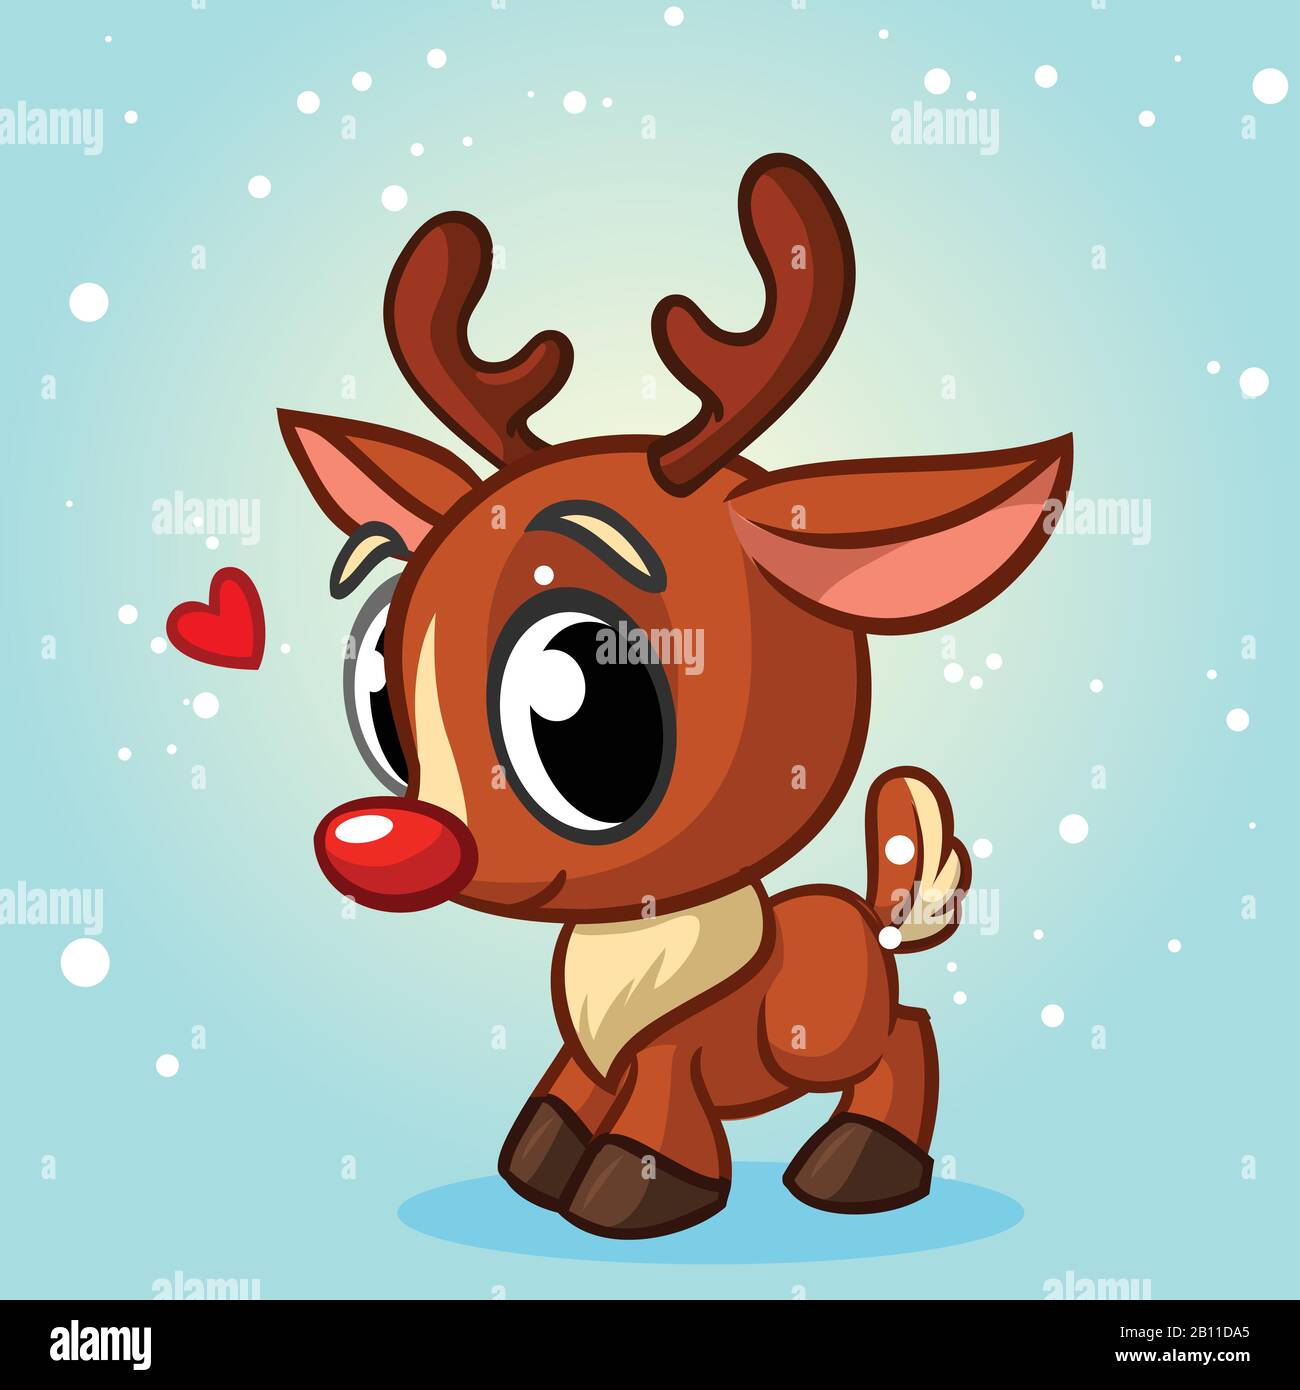 Bạn muốn tìm một mẫu hình vector độc đáo cho màn hình điện thoại hay máy tính của mình trong mùa Giáng sinh này? Bạn sẽ không thể không yêu thích bức hình vẽ tuần lộc đỏ dễ thương này! Với đường nét tinh tế và một màu đỏ rực rỡ, hình ảnh này sẽ tạo ra cảm giác đẹp và lễ hội cho người sử dụng!